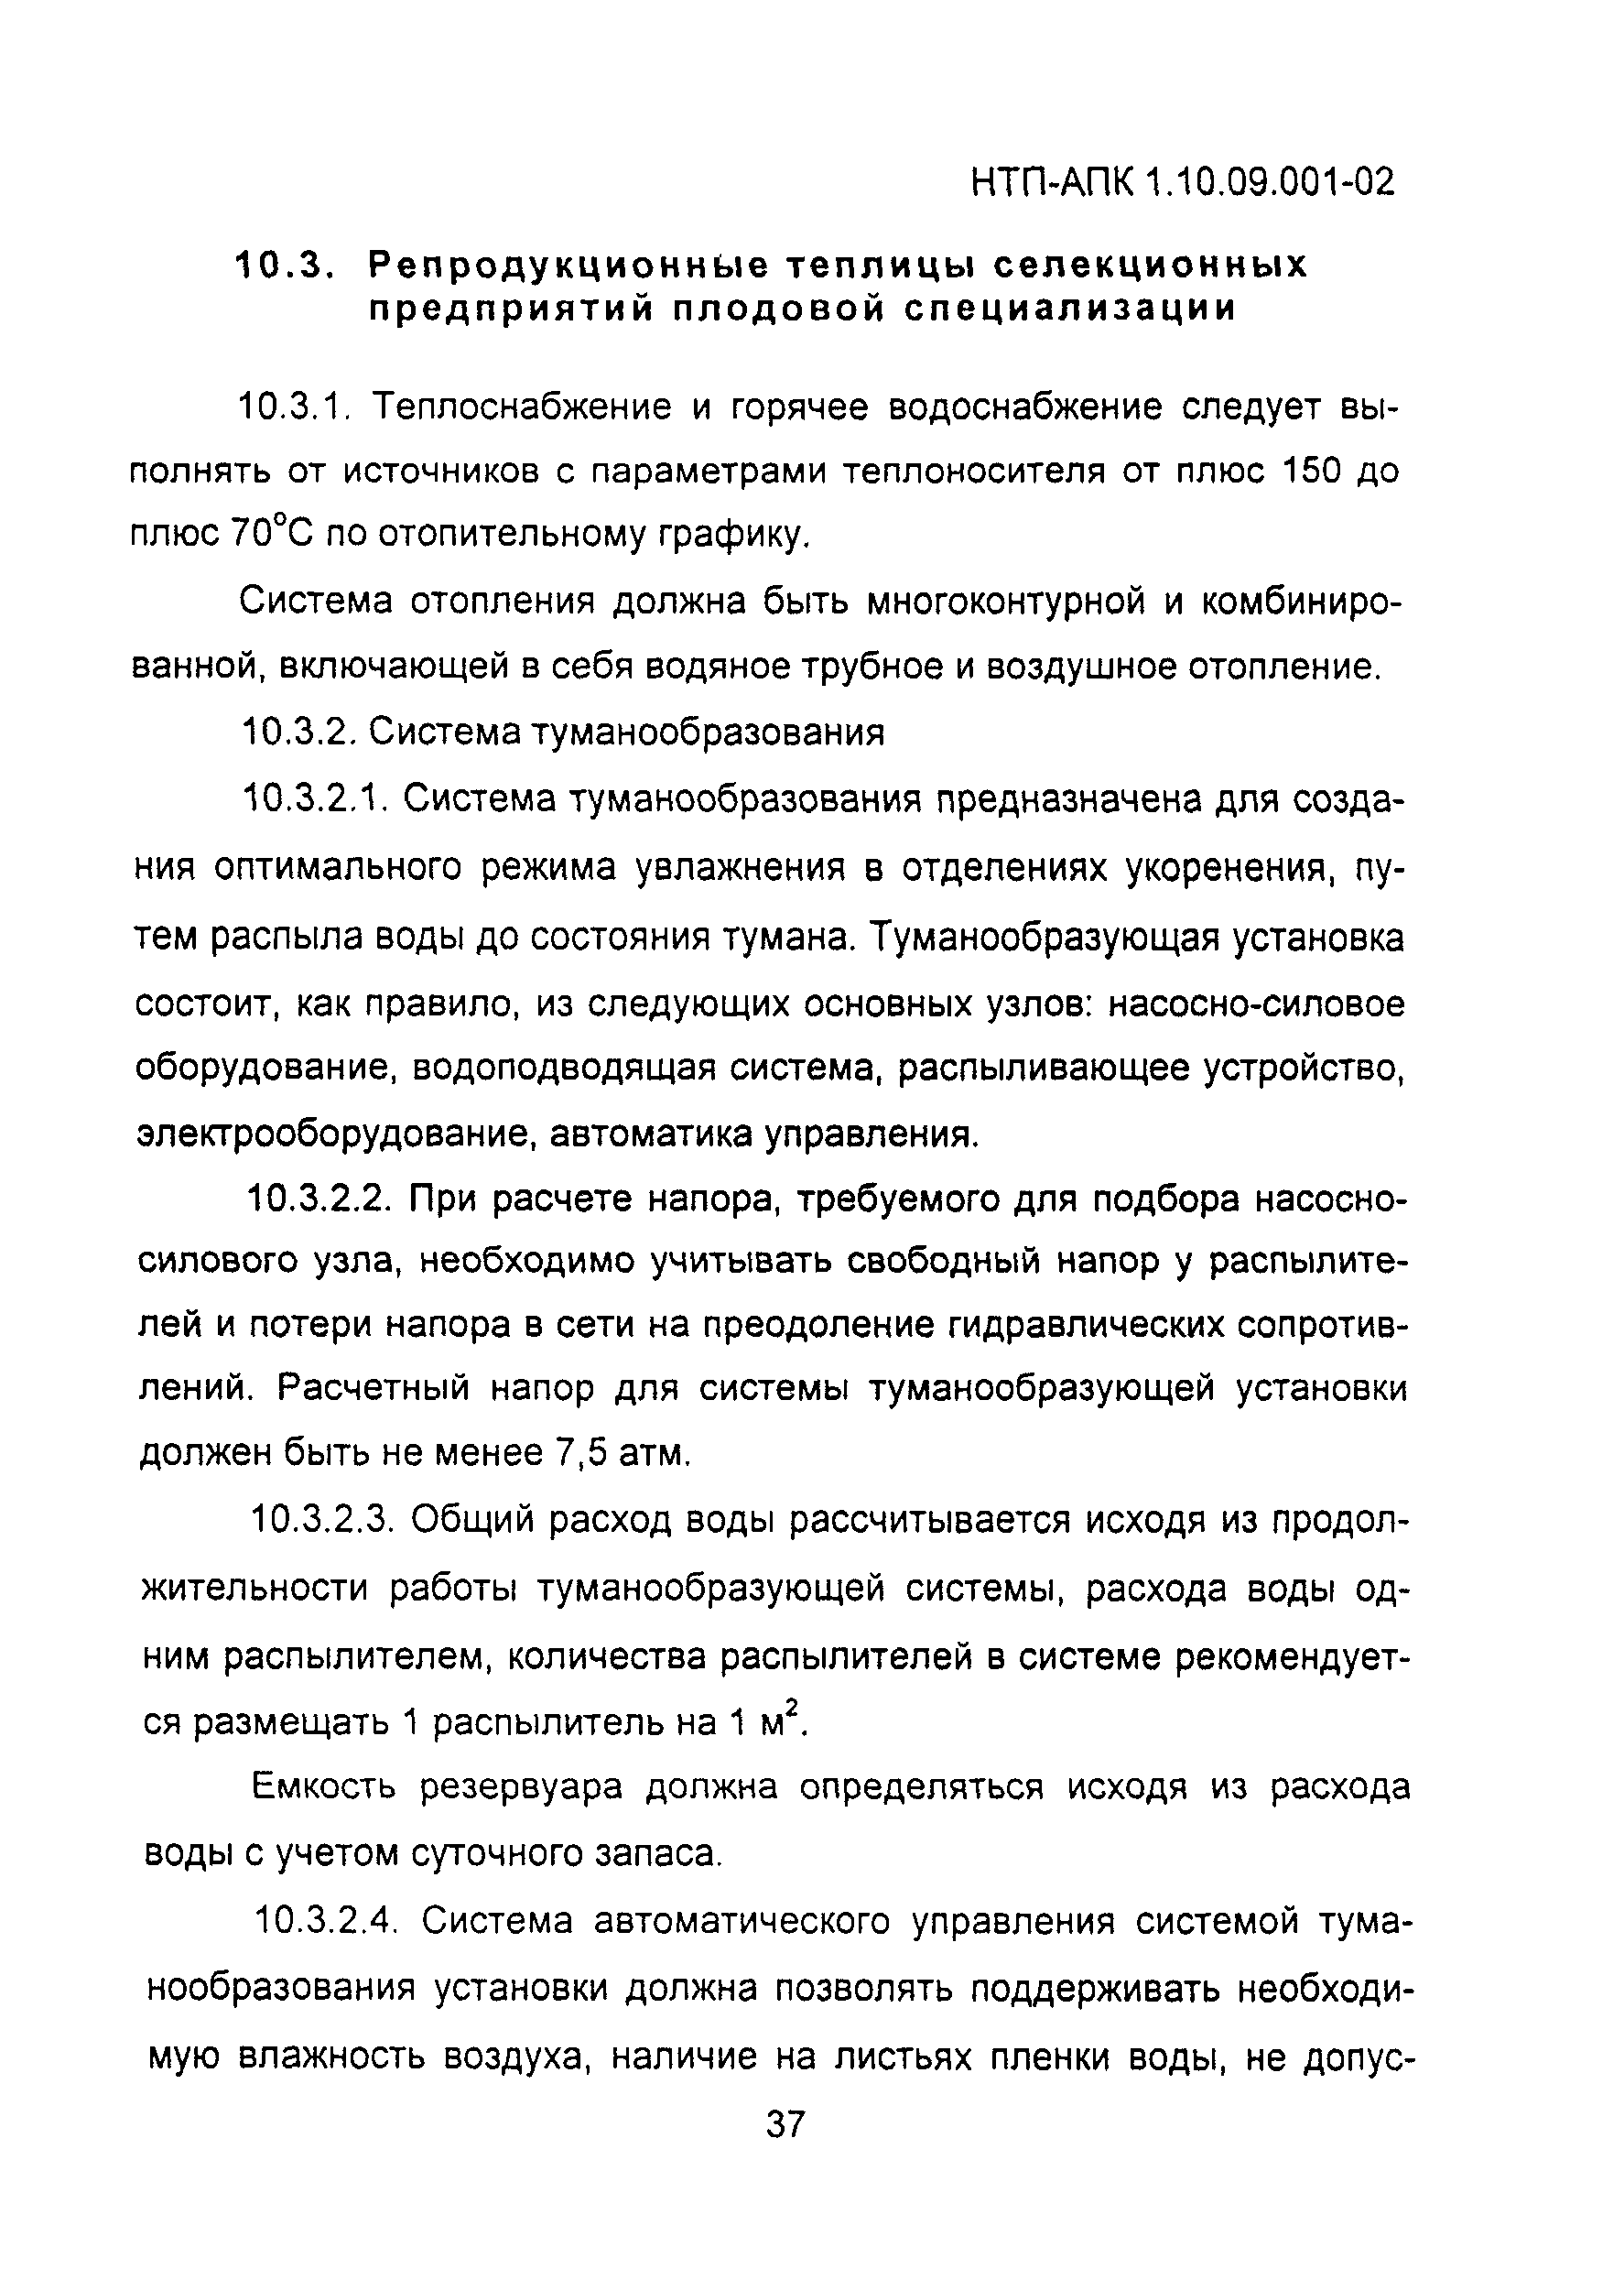 НТП-АПК 1.10.09.001-02